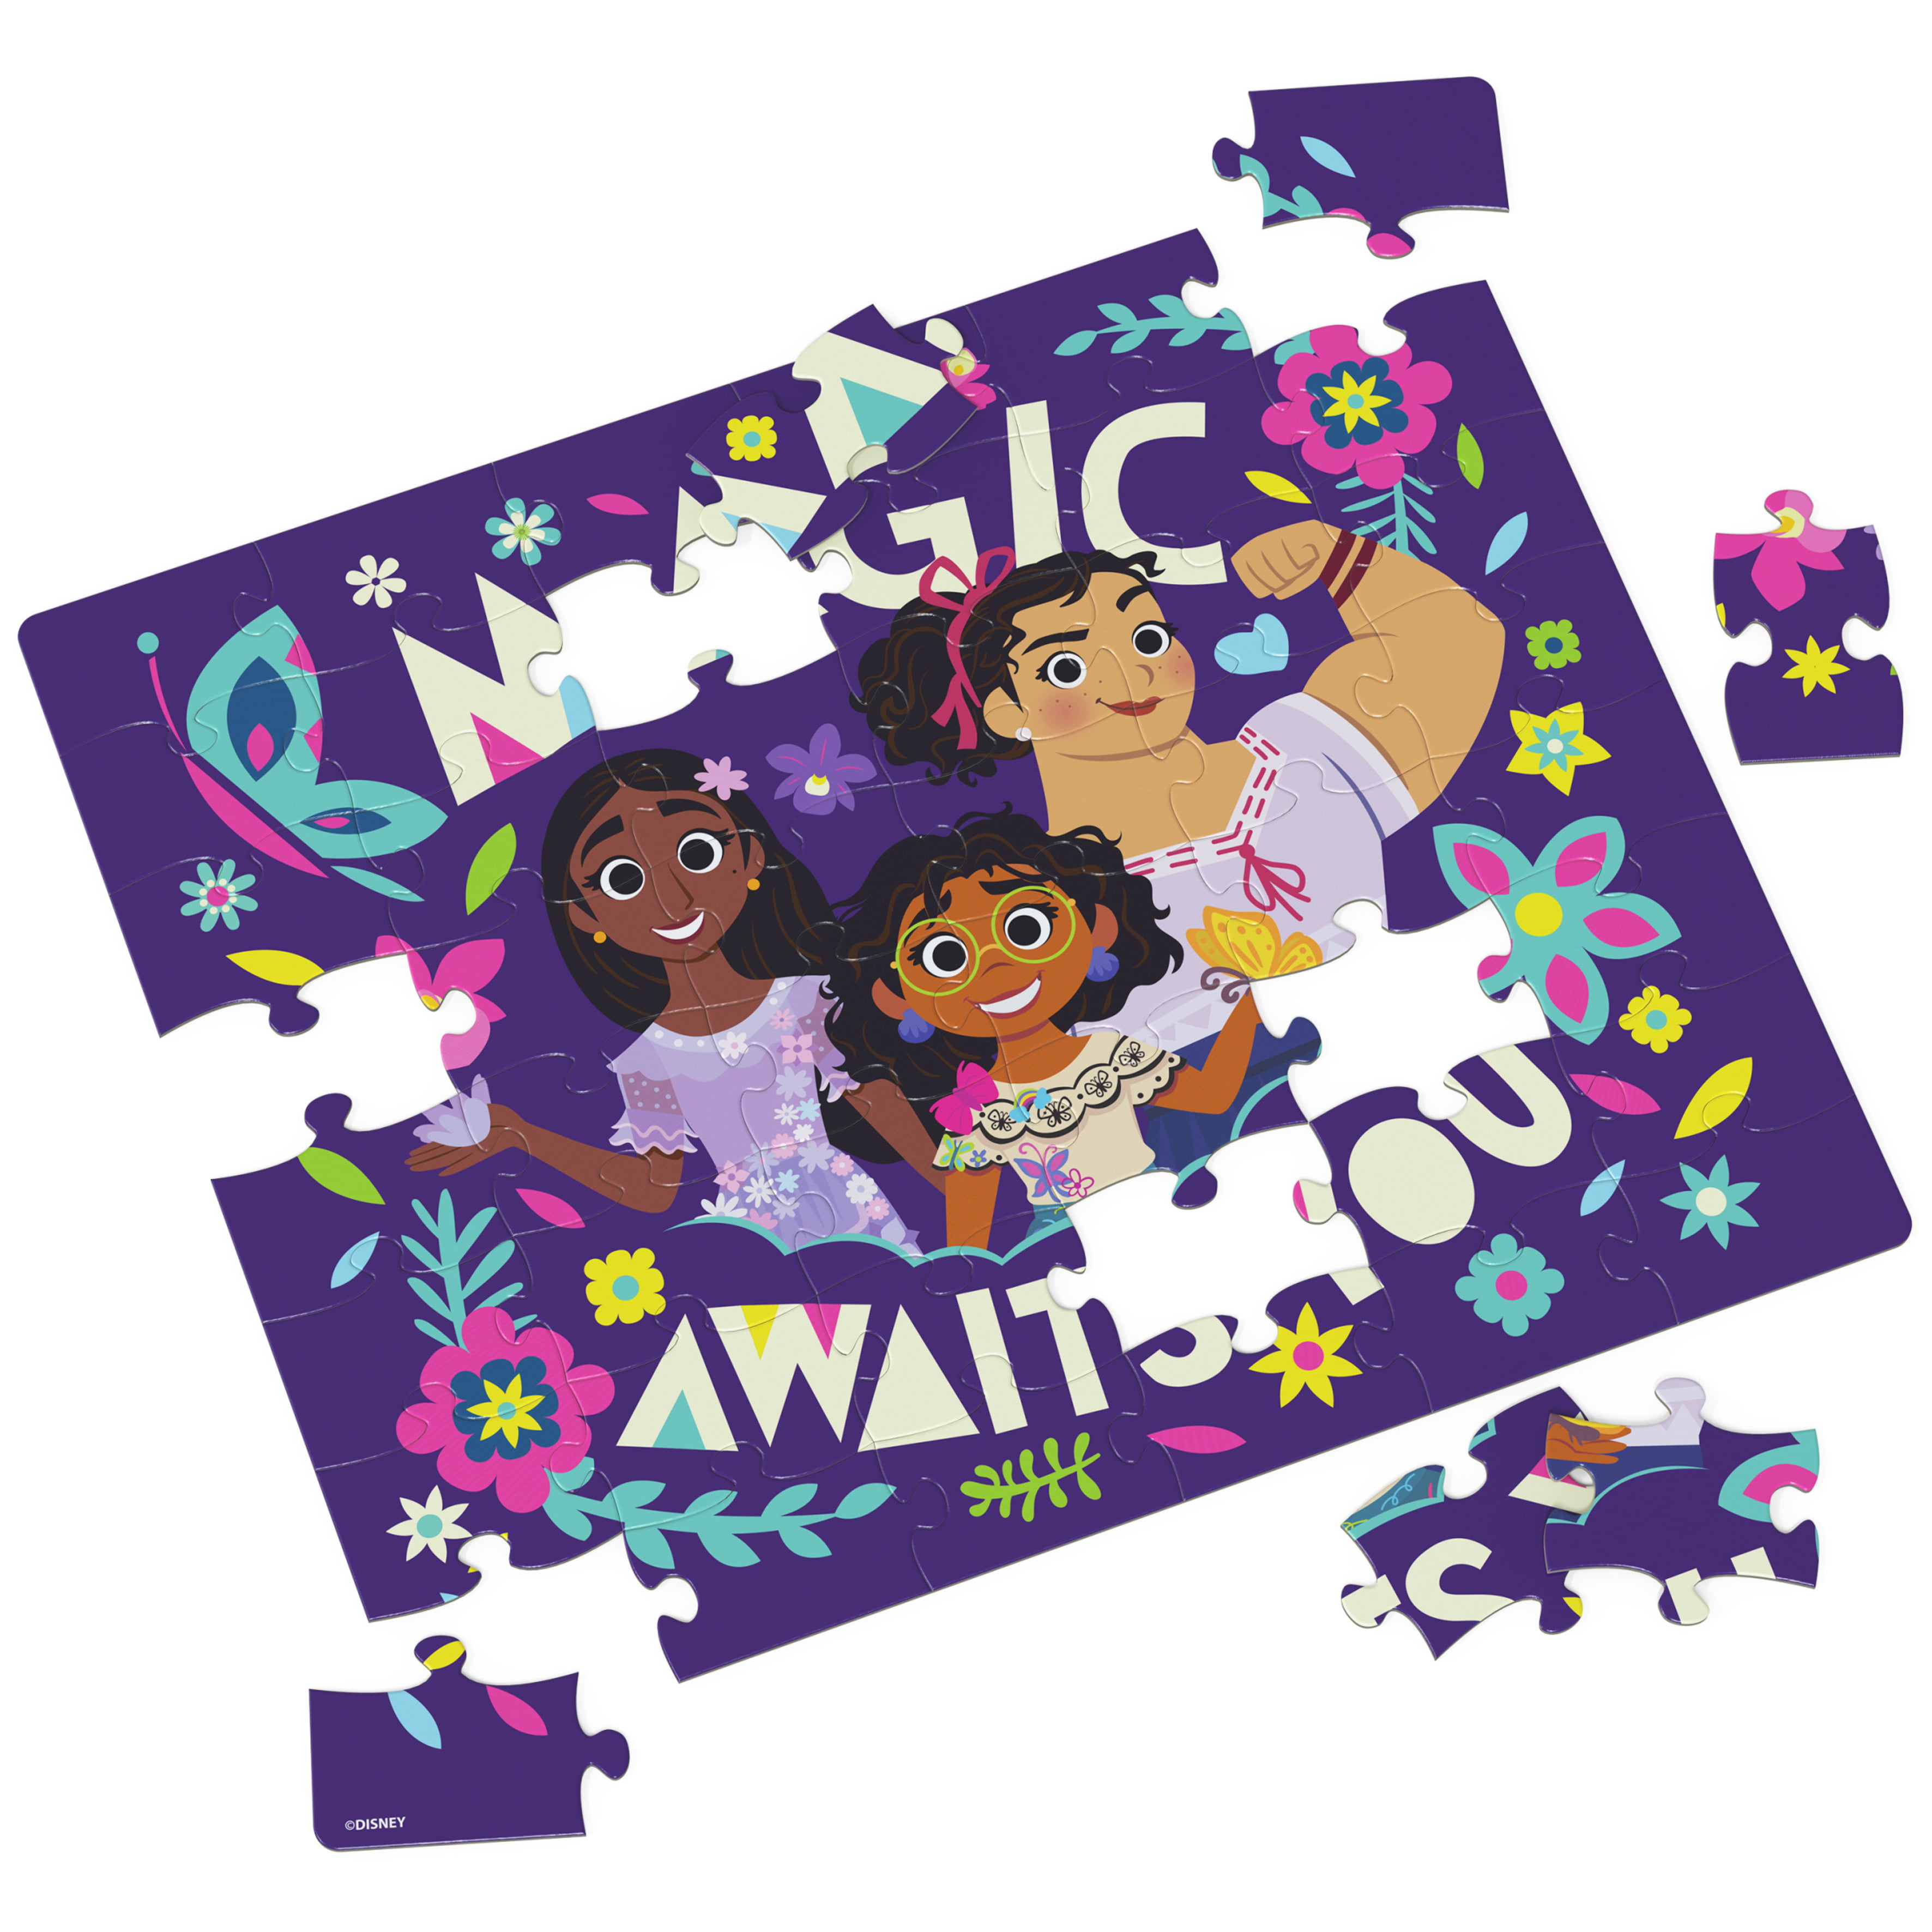 Clementoni - Puzzle 104 pièces Disney Encanto, Puzzles pour enfants, 6-8 ans,  25746